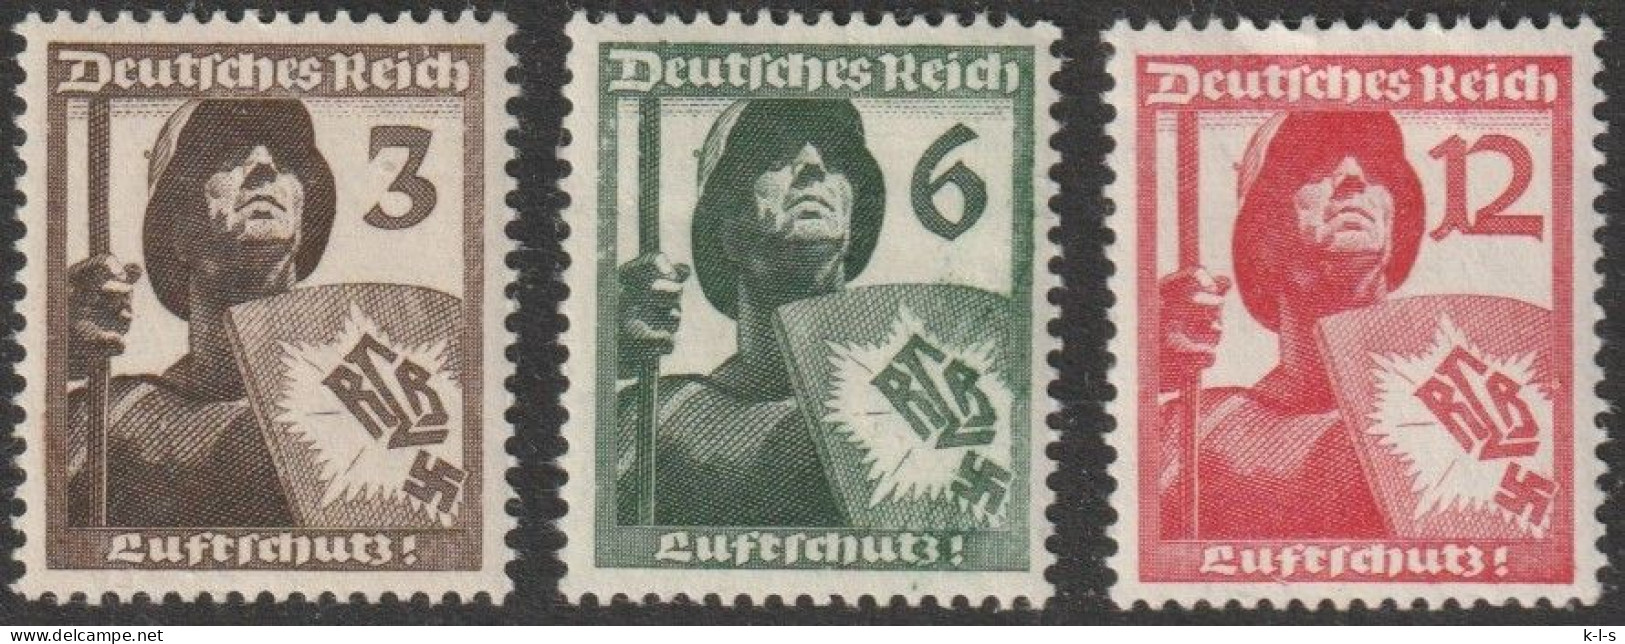 Deut. Reich: 1937, Mi. Nr. 643-45, Luftschutz.  **/MNH - Neufs